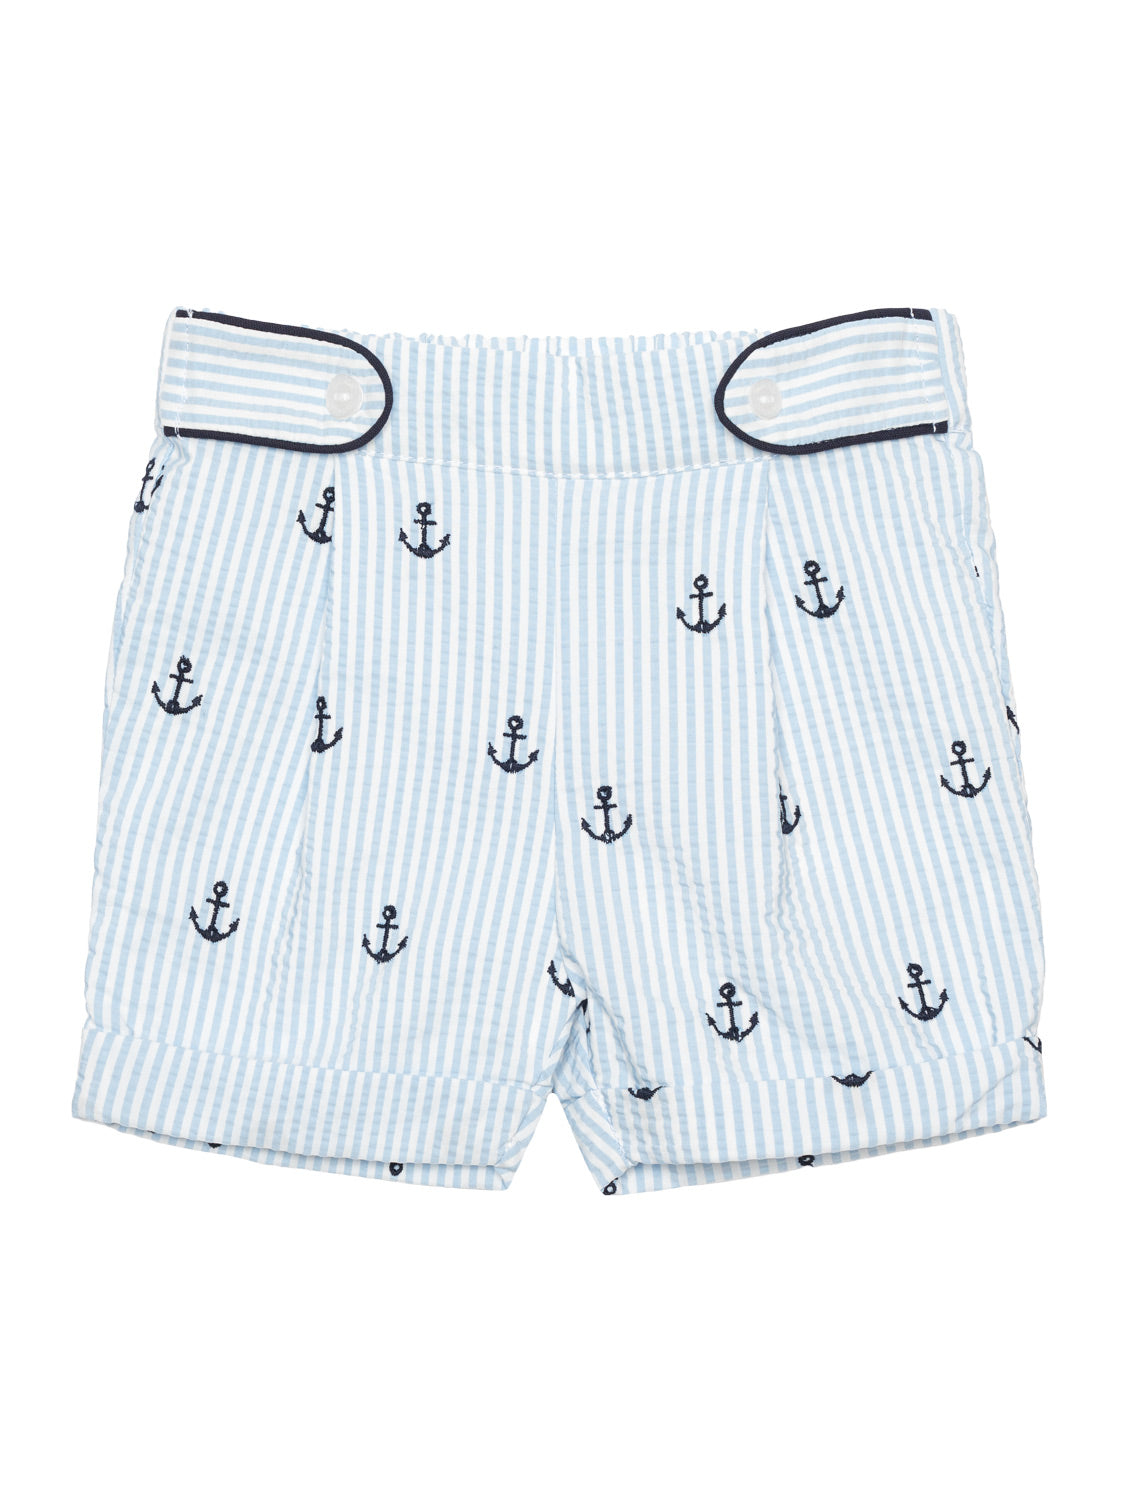 Set aus Poloshirt und Shorts mit Stickereien - Weiß/Blau